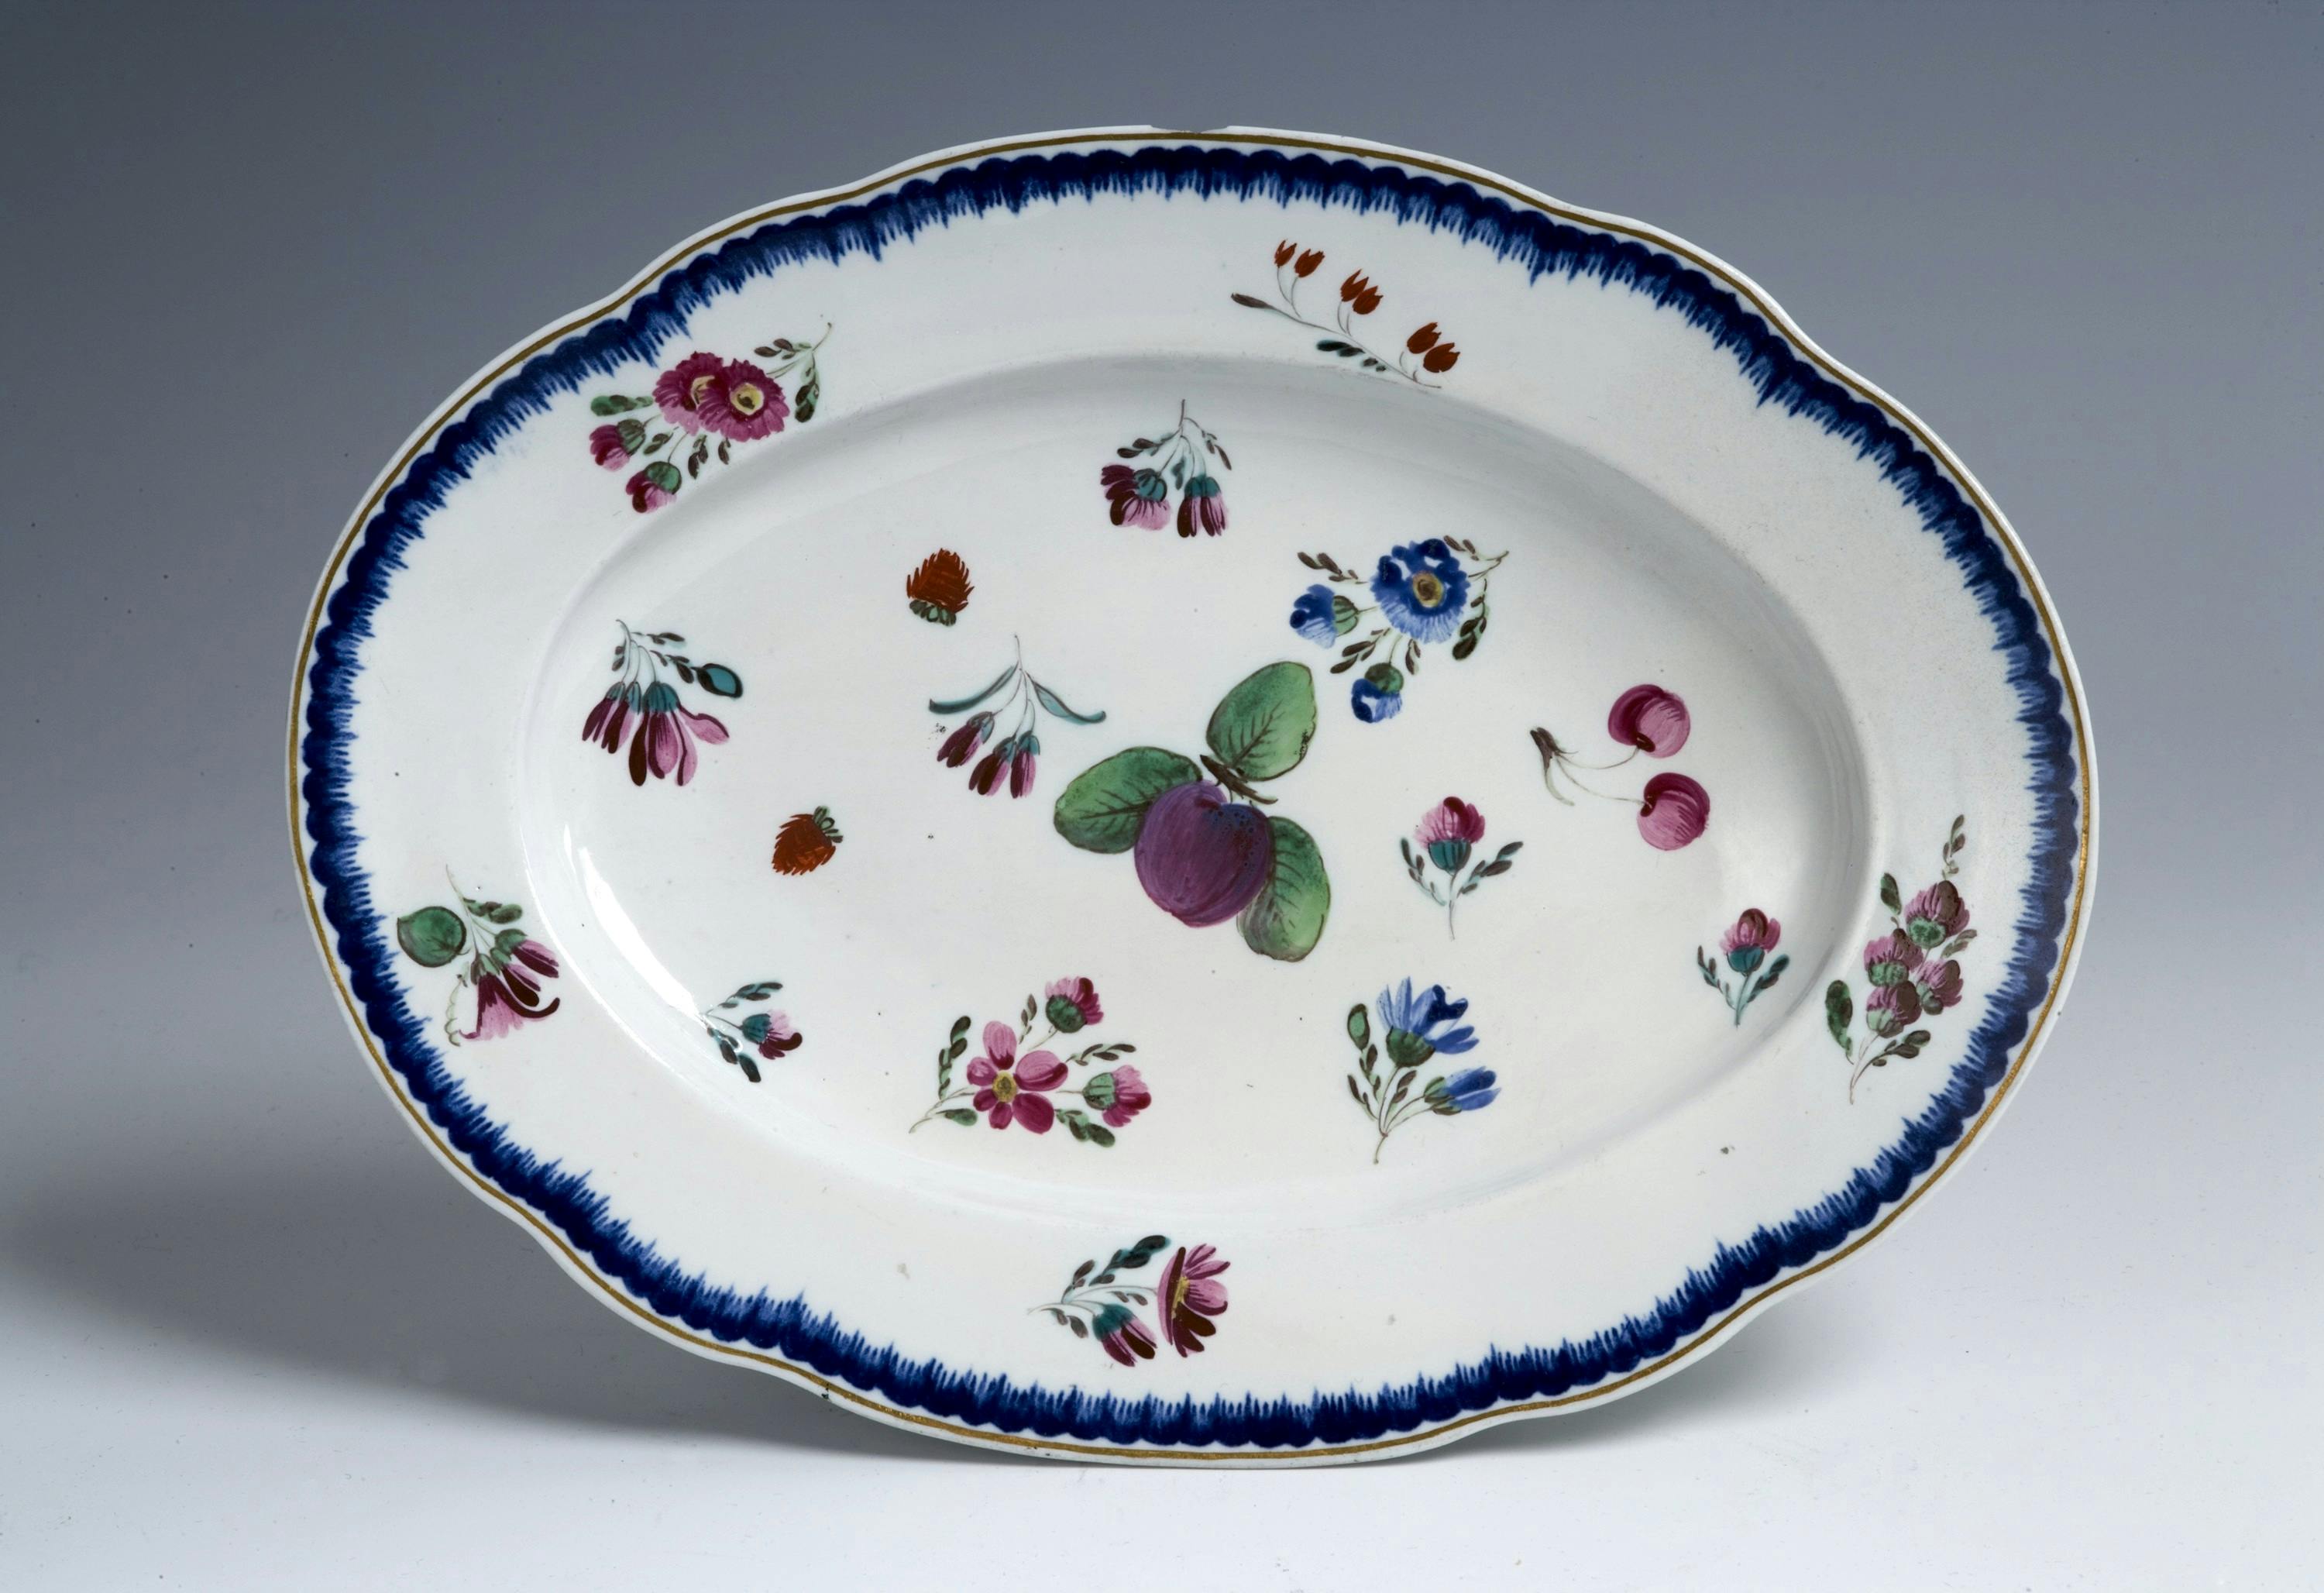 Piatto ovale con bordo blu e decori variopinti a fiori e frutti sparsi